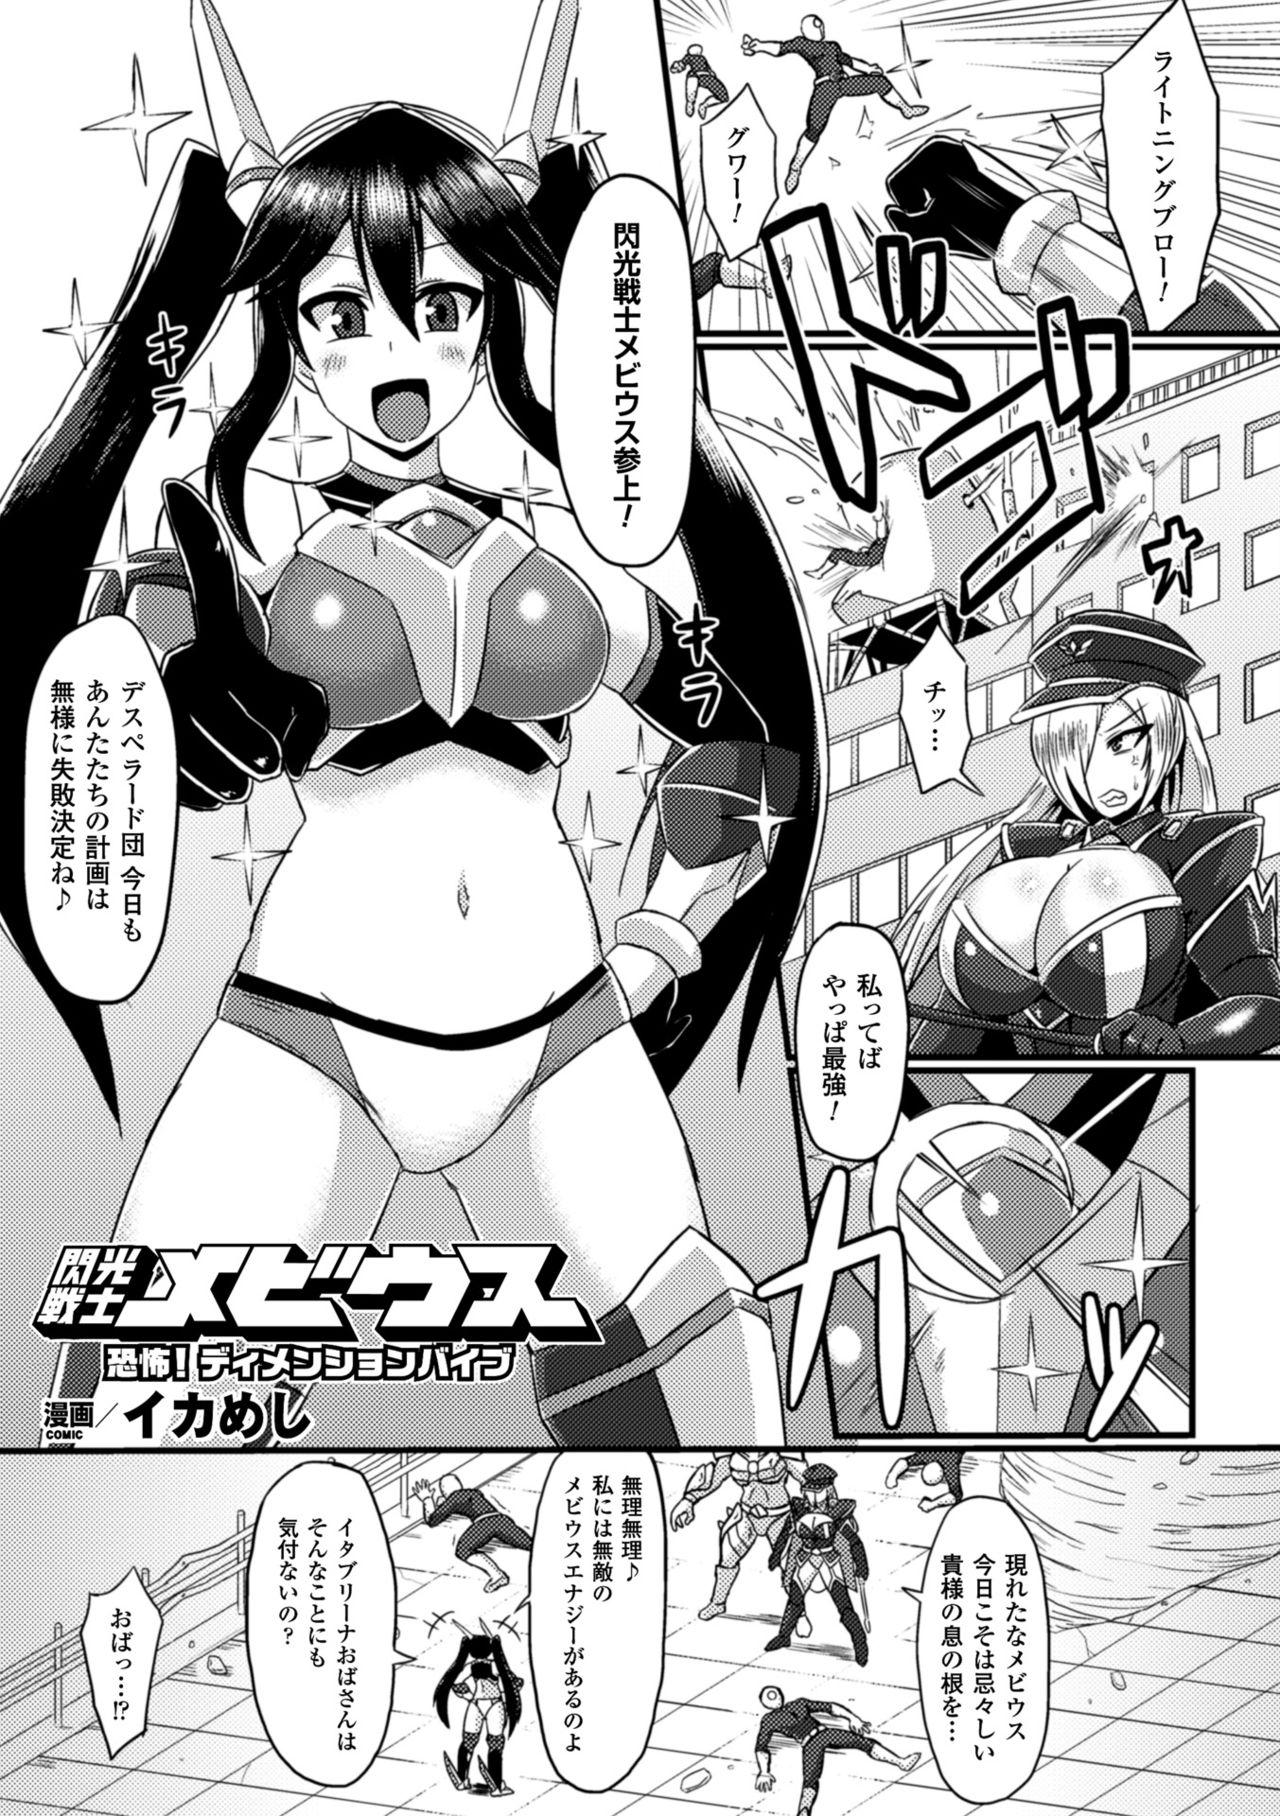 2D Comic Magazine Seiki Kakuchou Kyousei Acme! Vol. 2 4